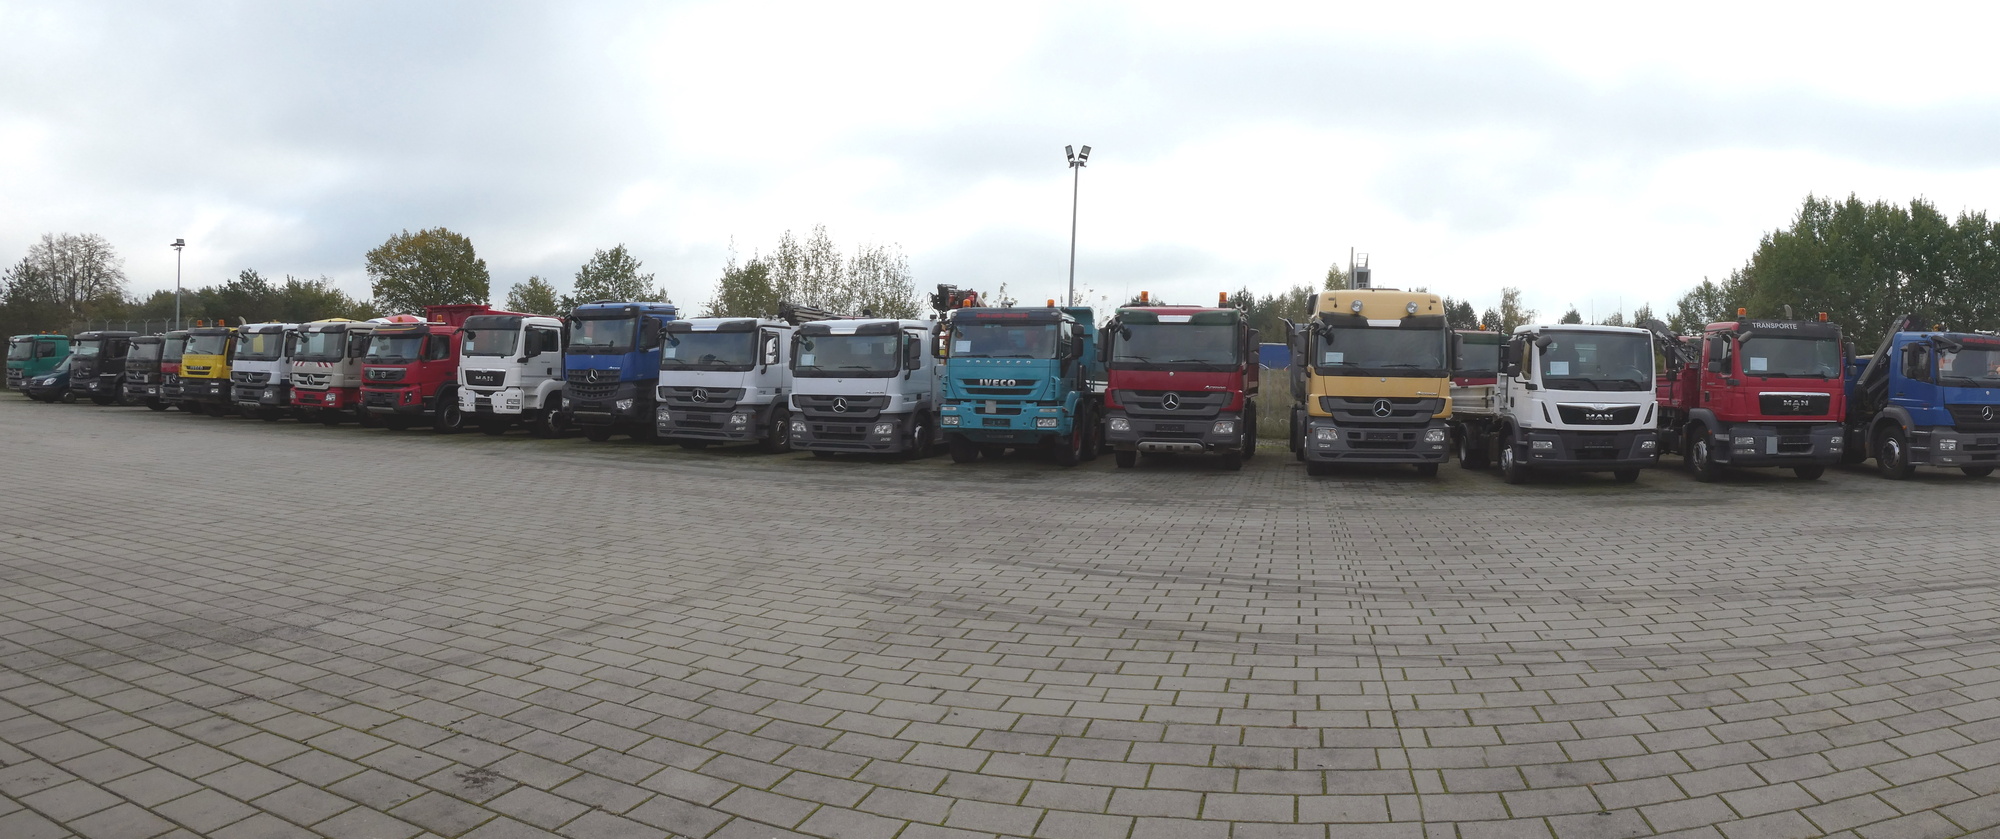 Henze Truck GmbH undefined: slika 1